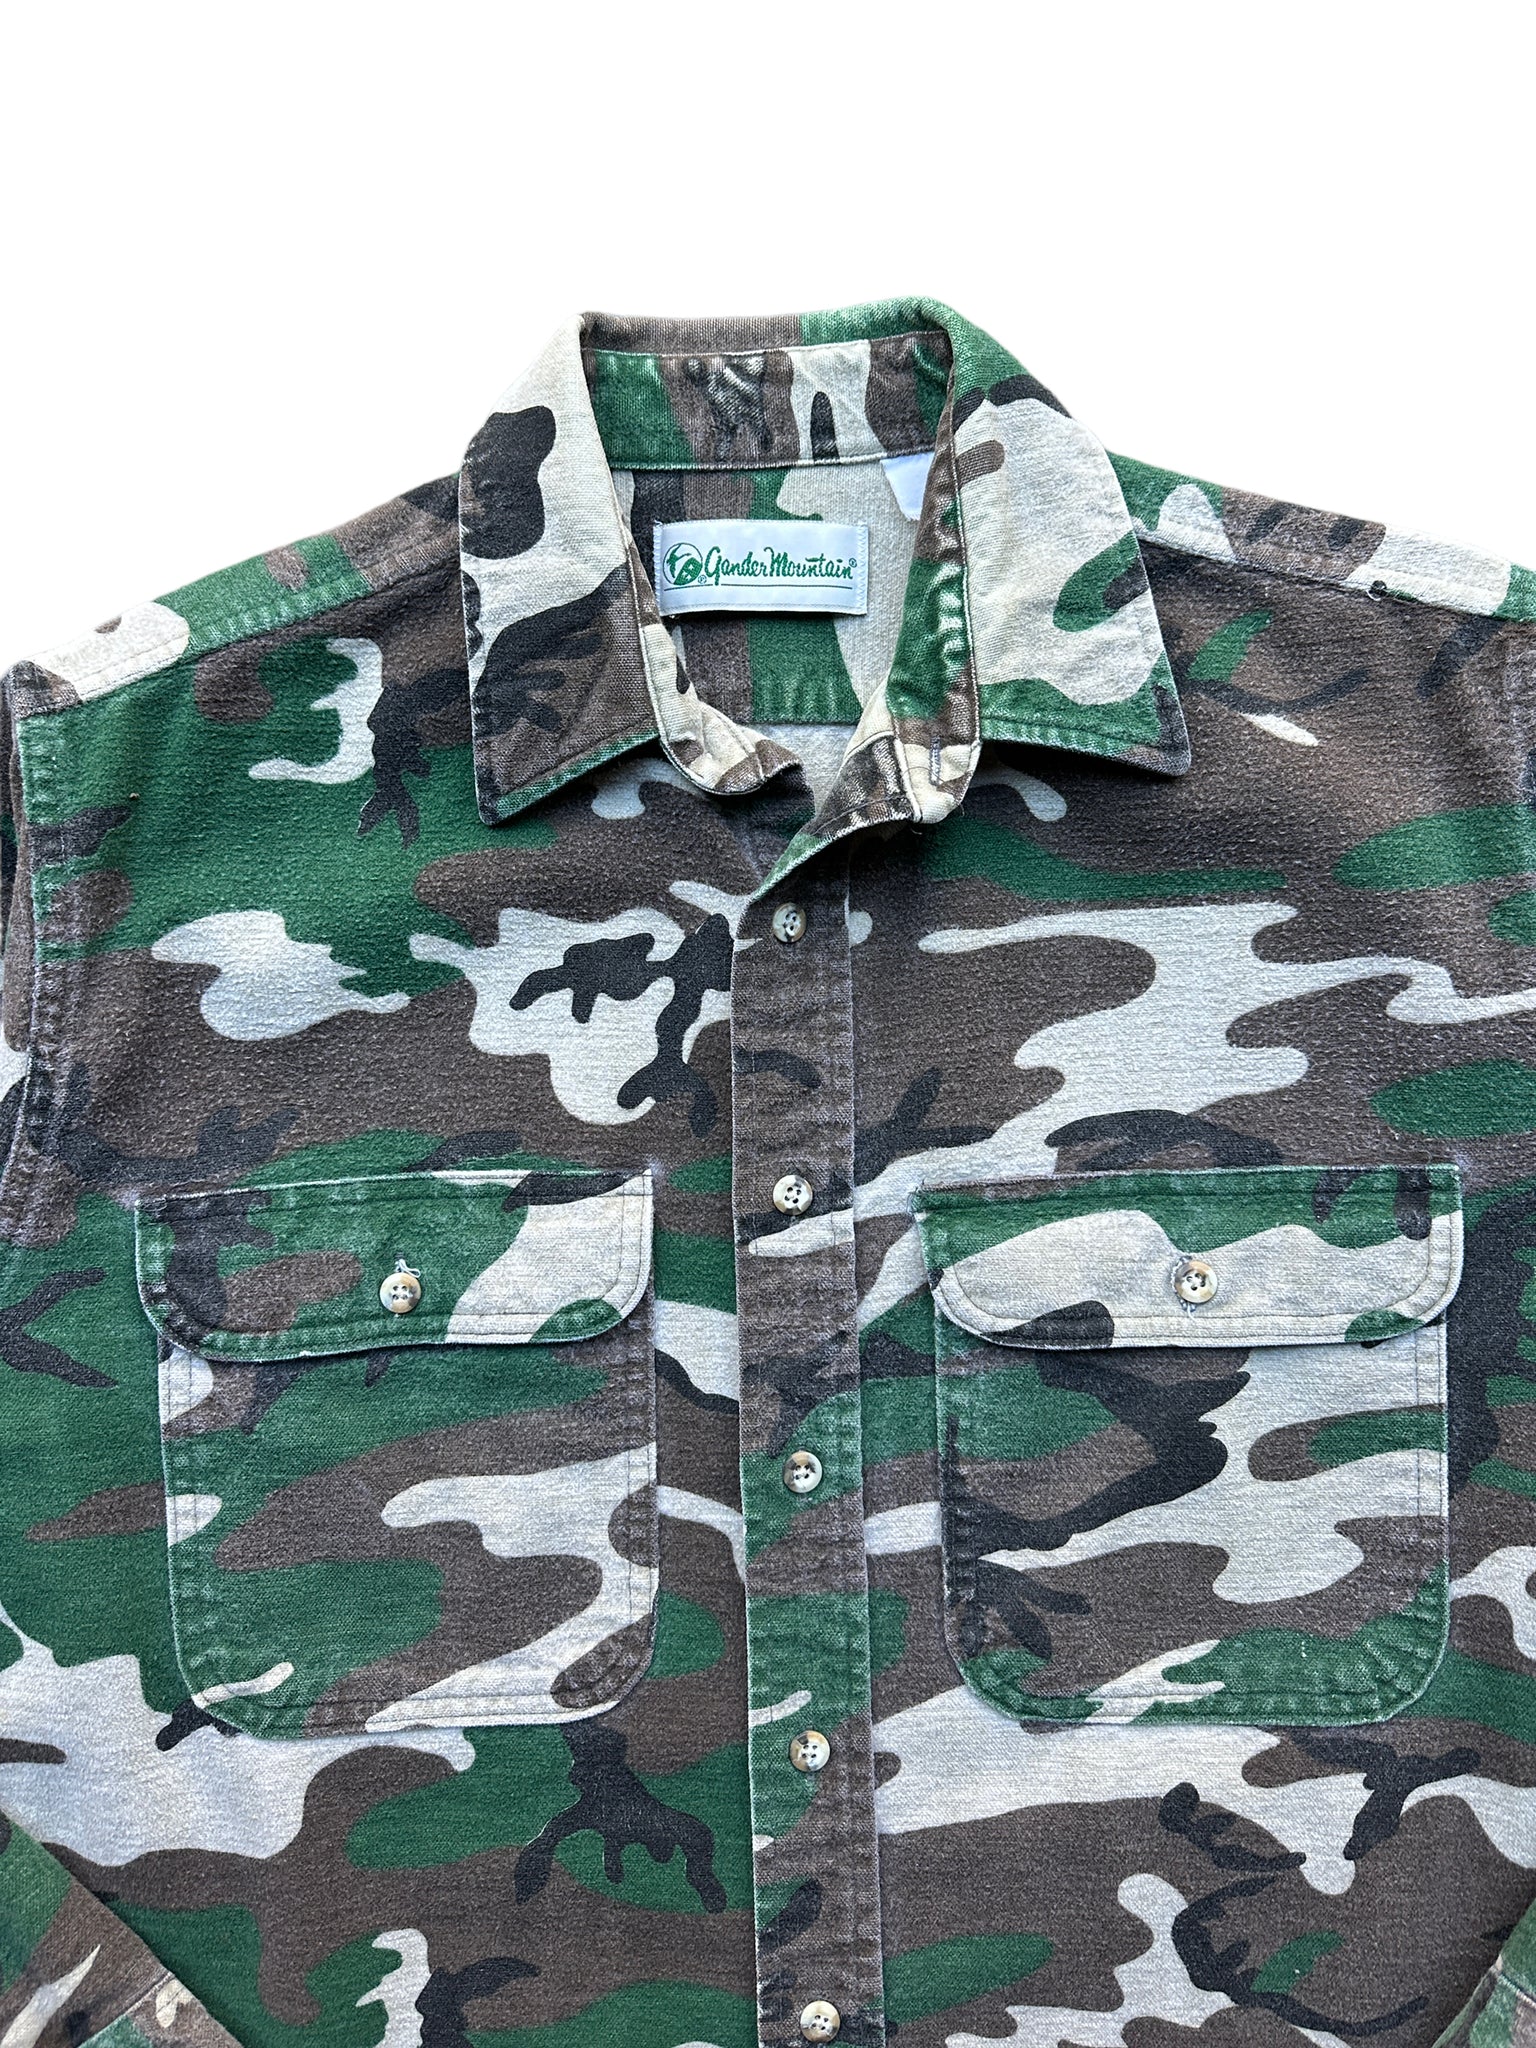 80s Gander mountain camo chamois shirt XL